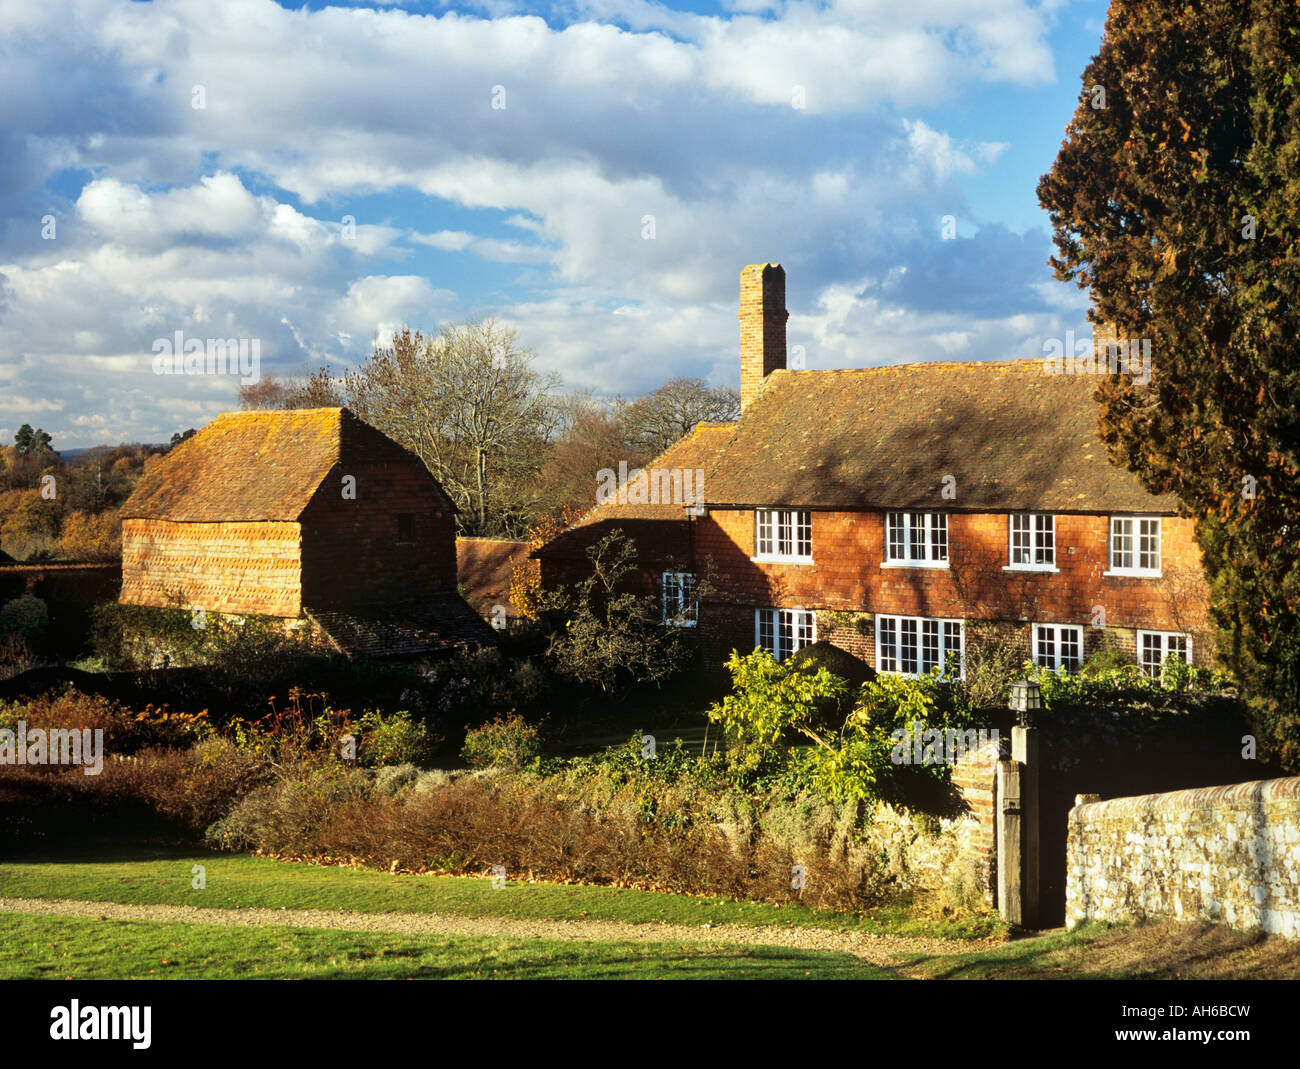 HOF BAUERNHOF und KORNSPEICHER 17. Jahrhundert Fliesen Hung Bauernhaus und 18. Jahrhundert Kornspeicher. Hambledon Surrey England Großbritannien Stockfoto